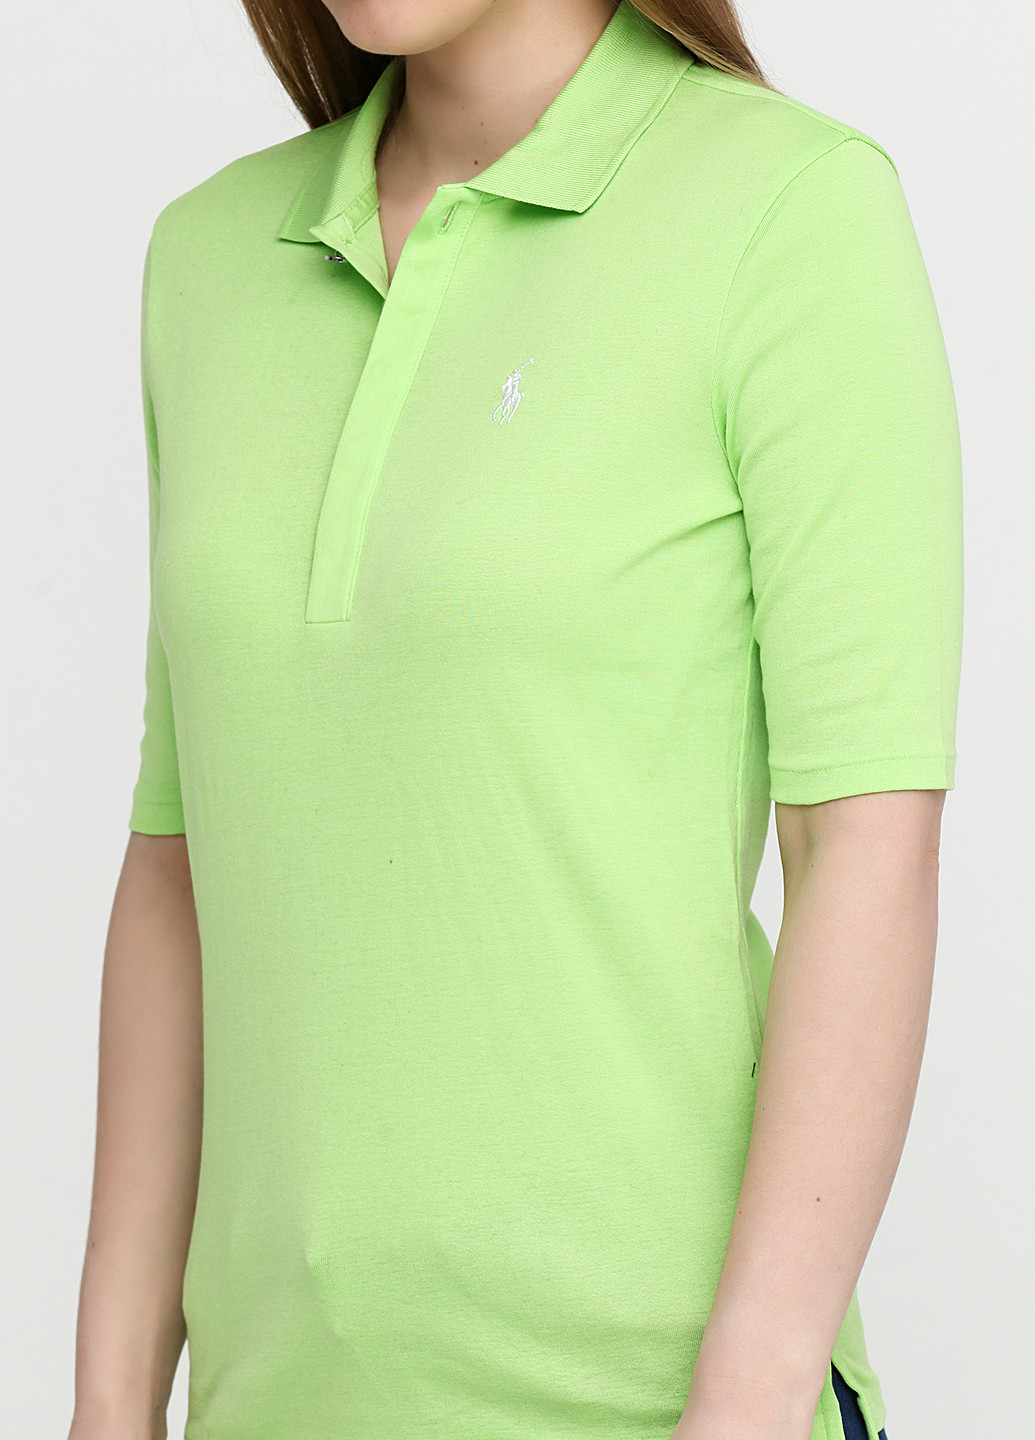 Салатовая женская футболка-поло Ralph Lauren однотонная